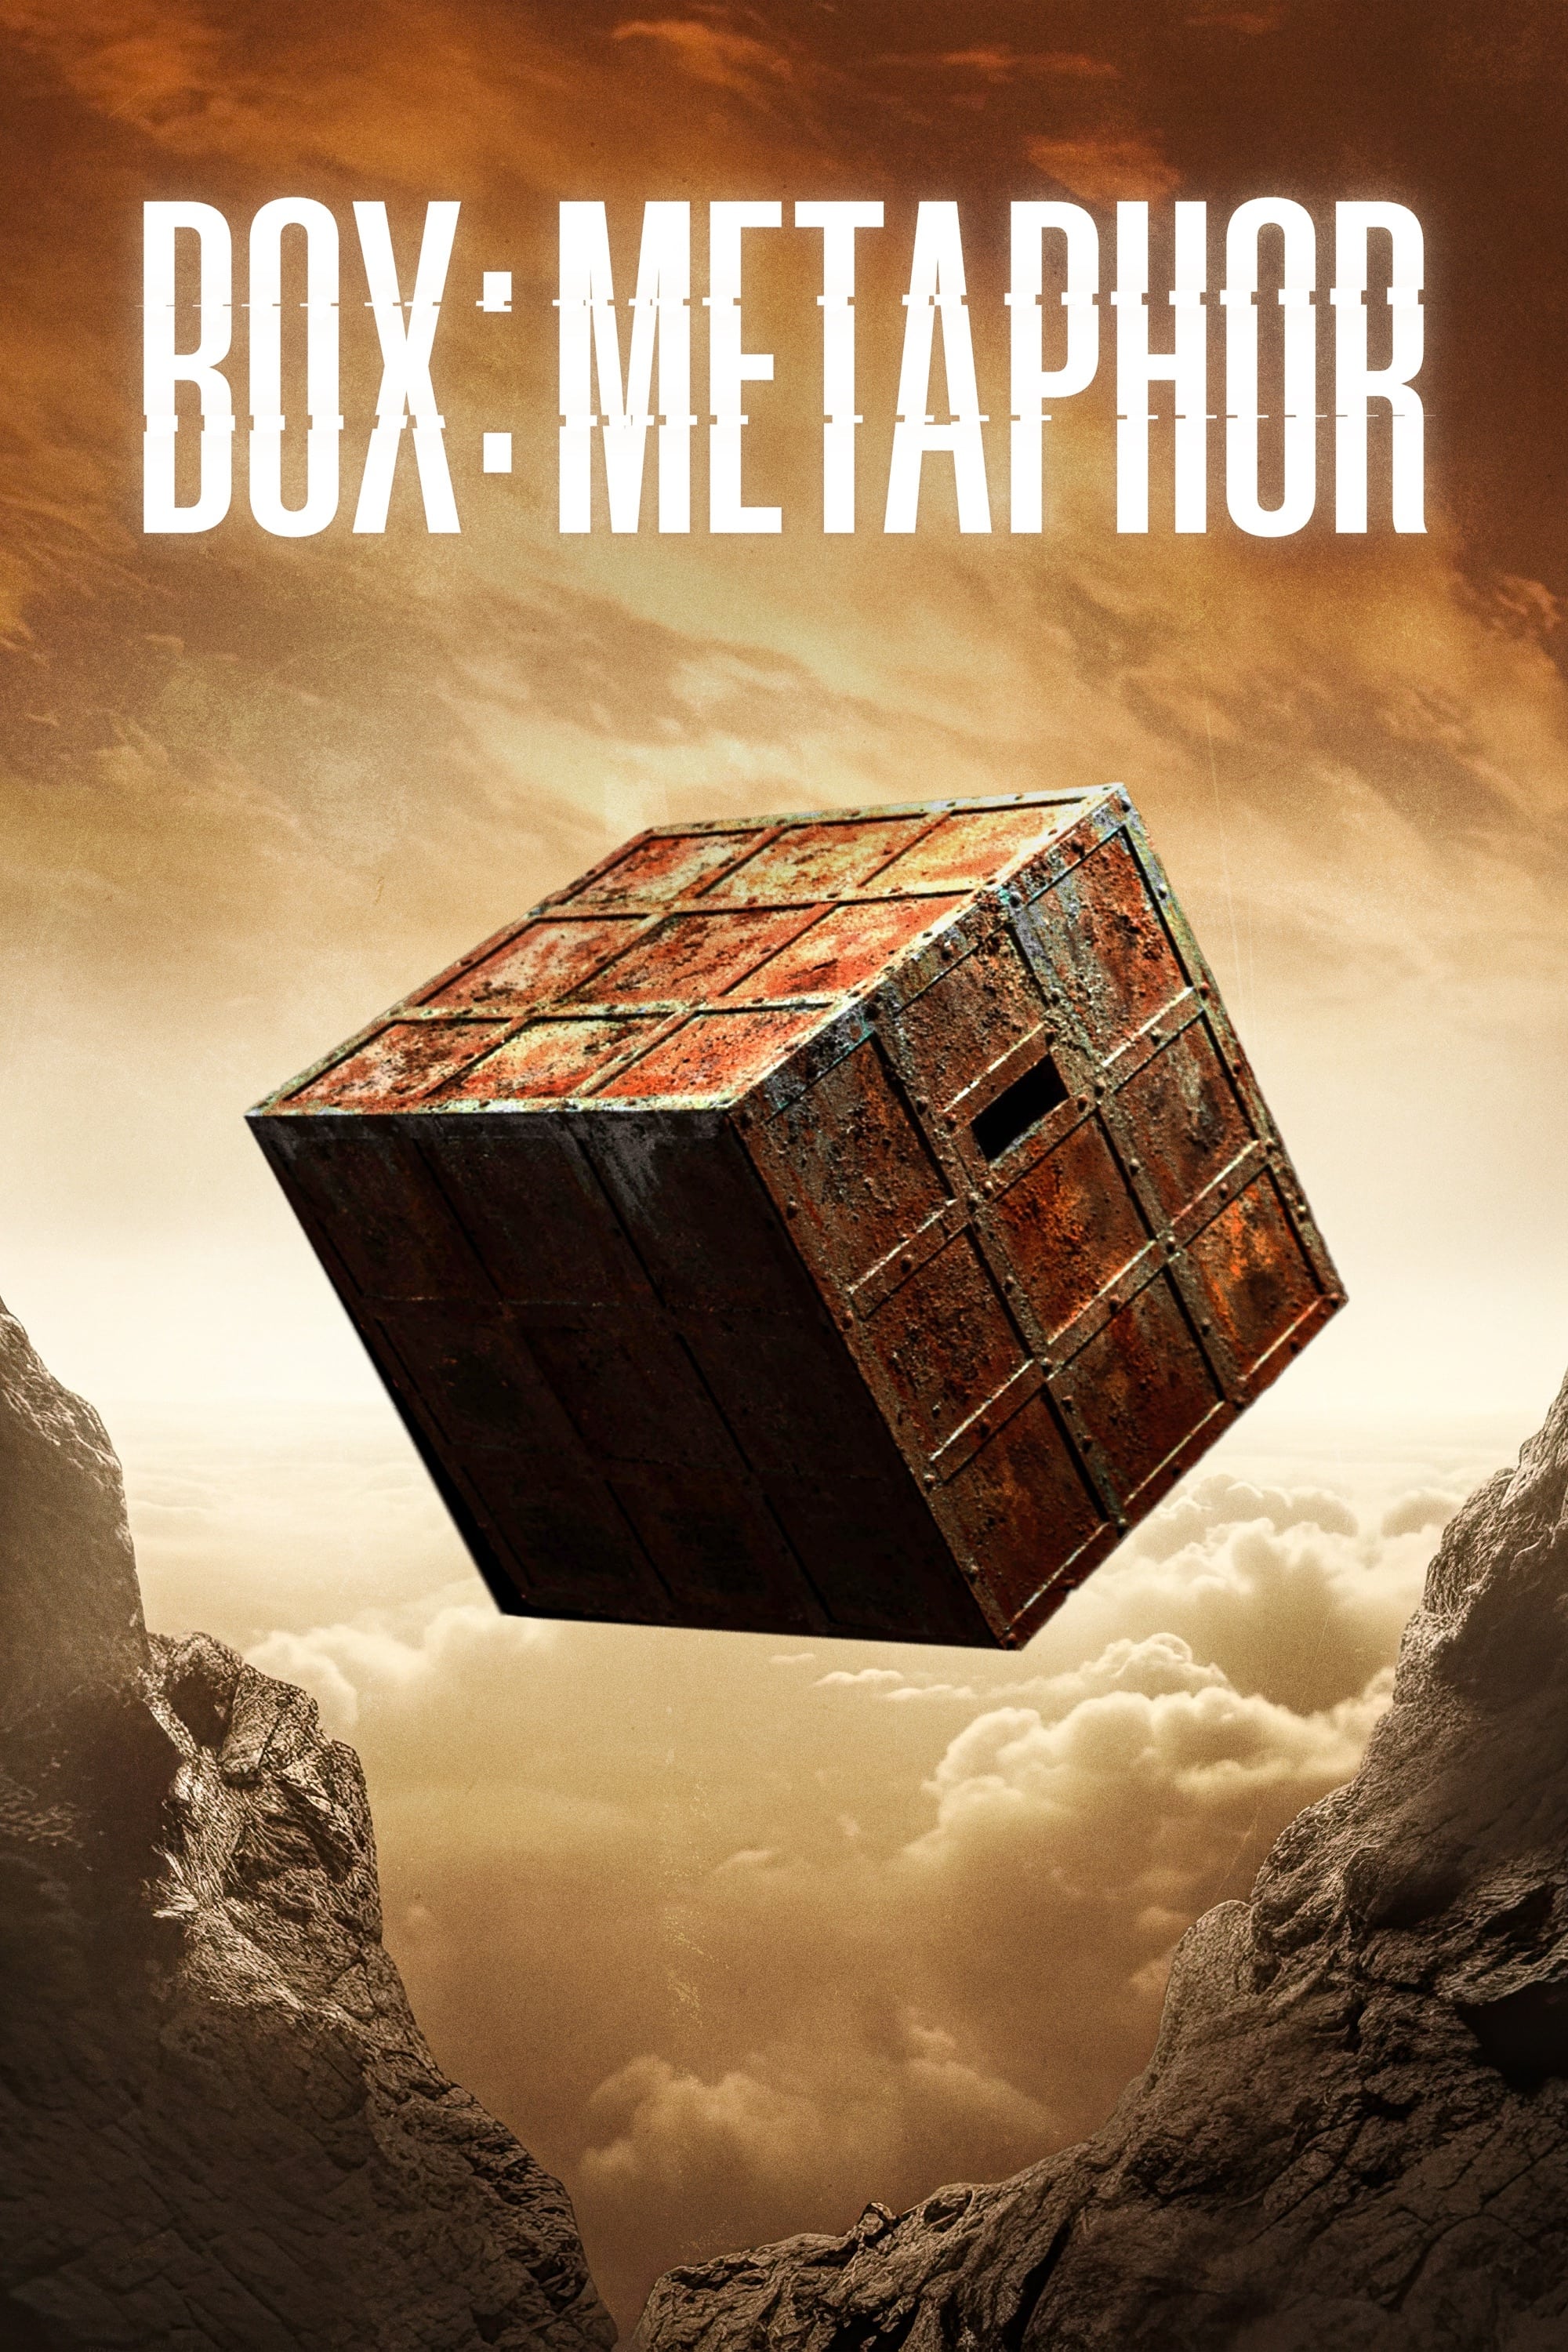 Box Metaphor